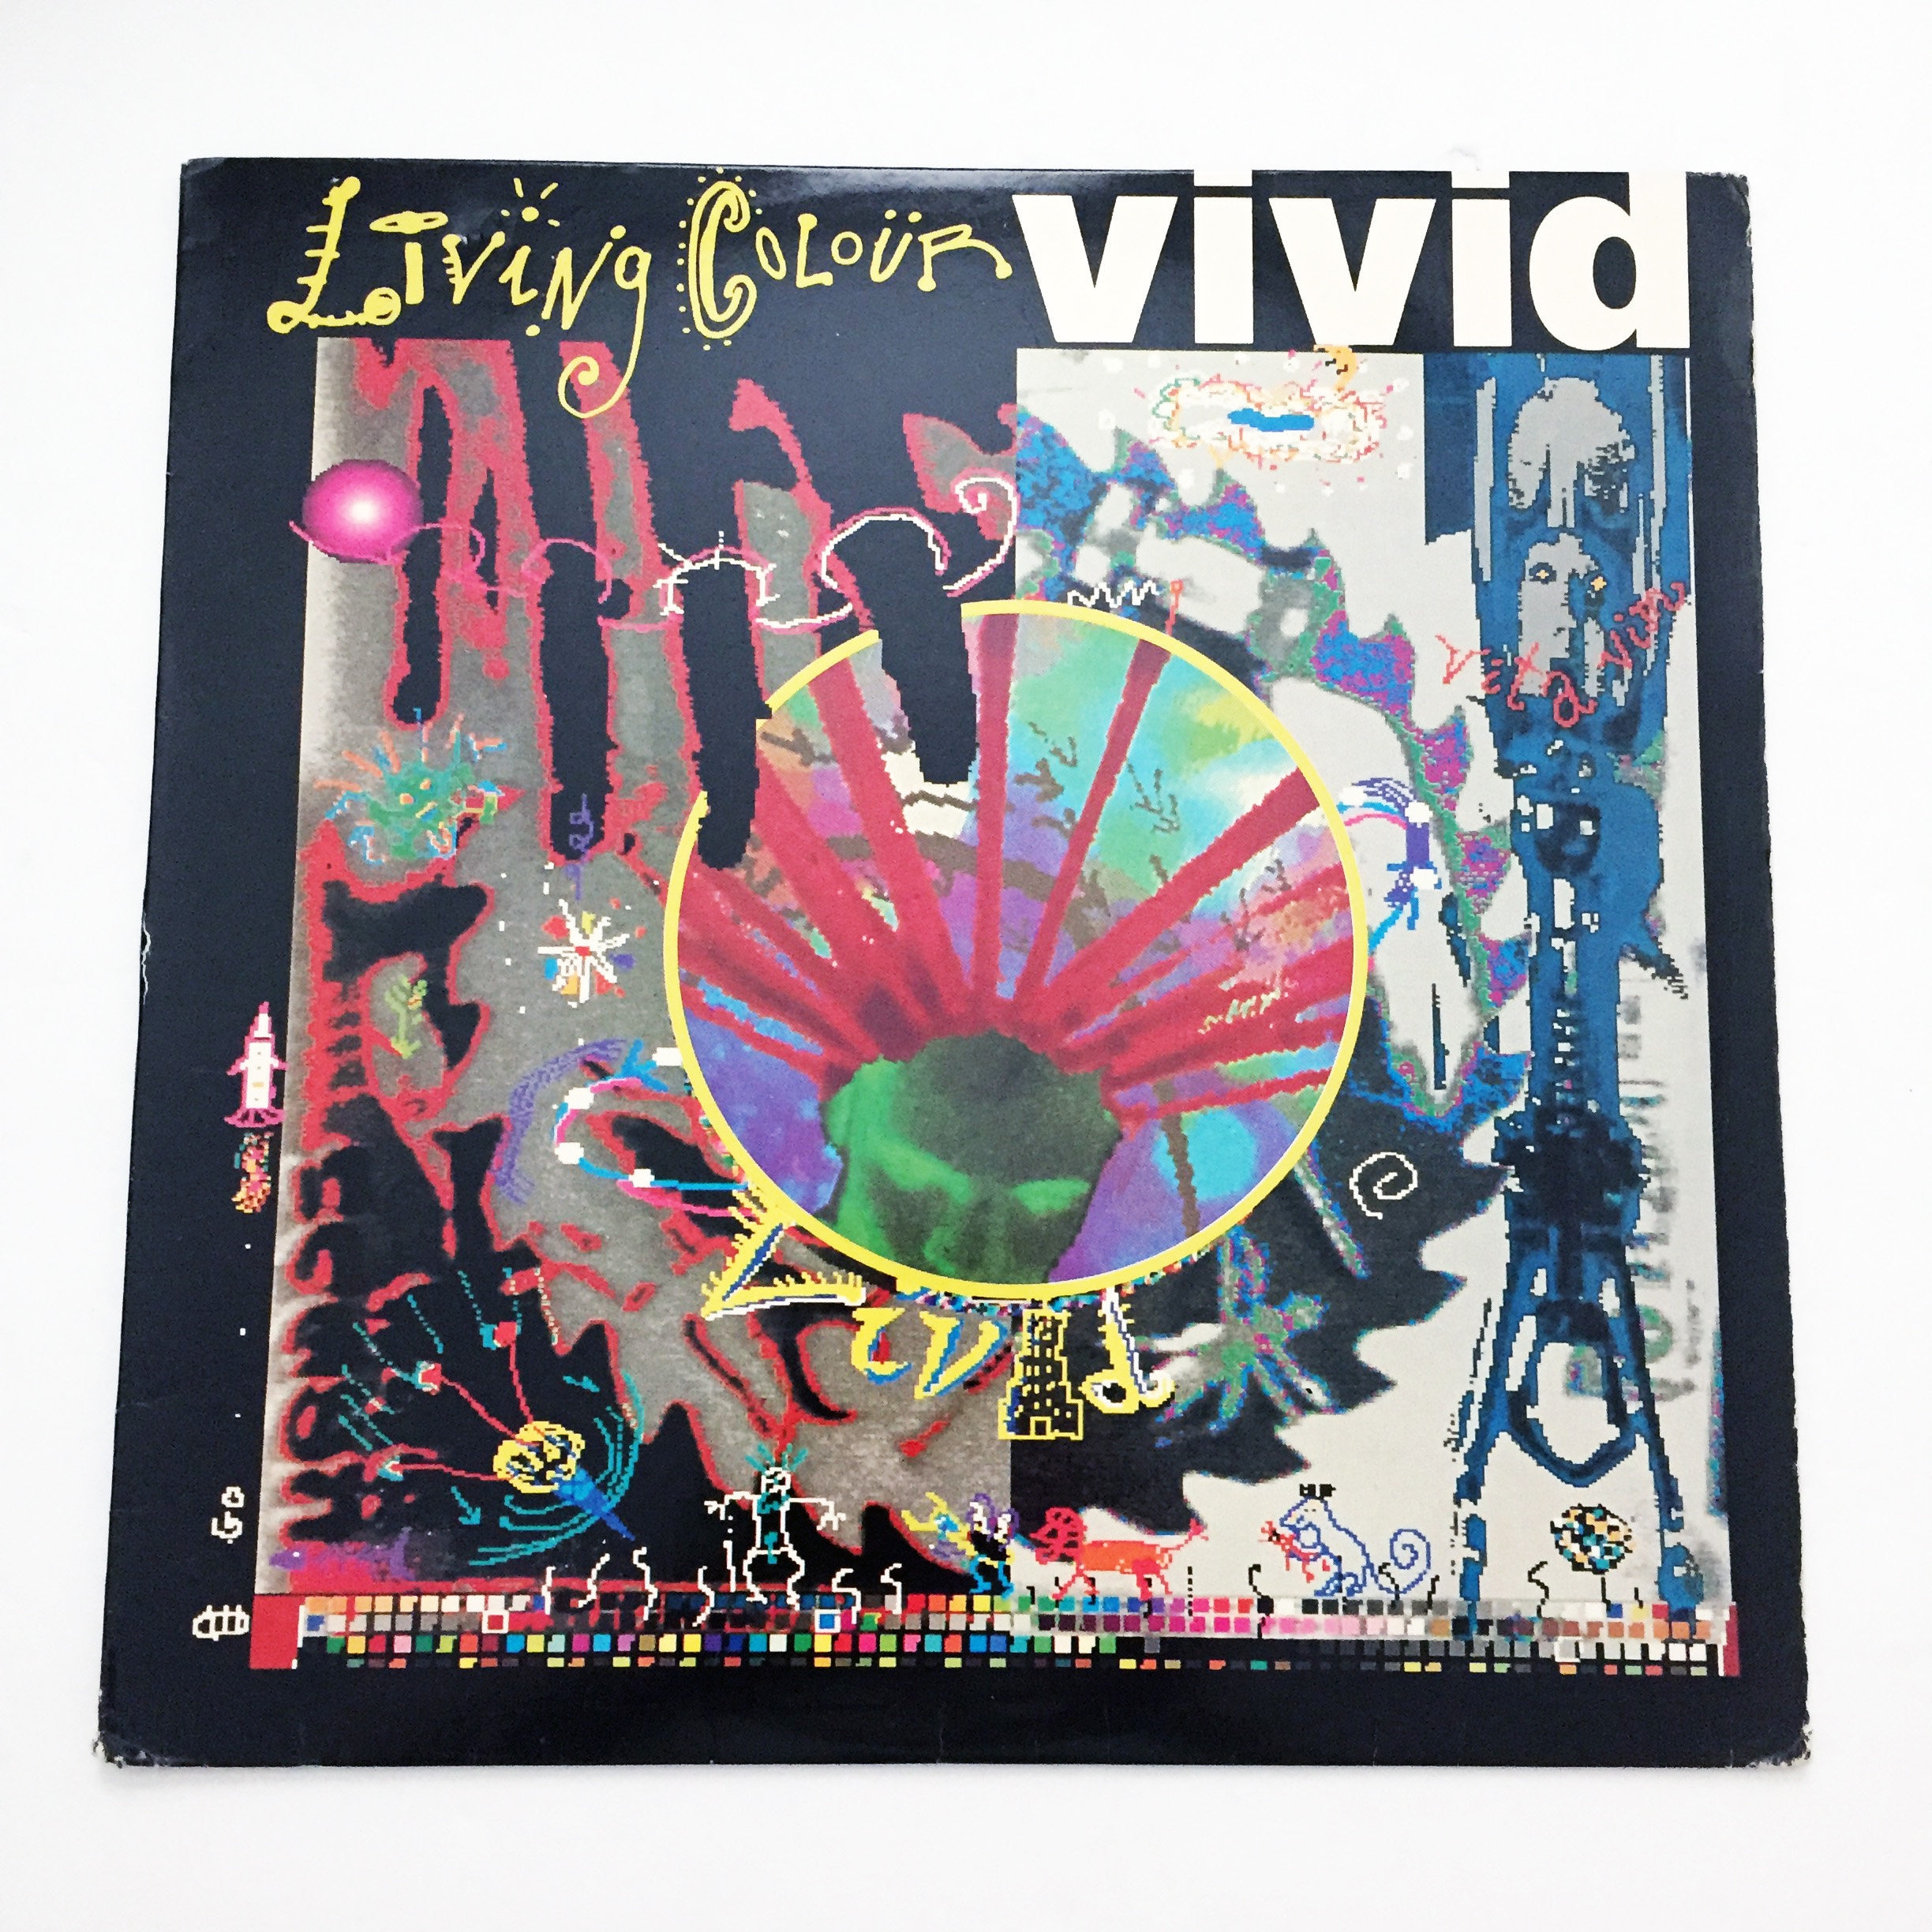 Vintage Living Colour Vivid Vinyl Record LP Album - Etsy